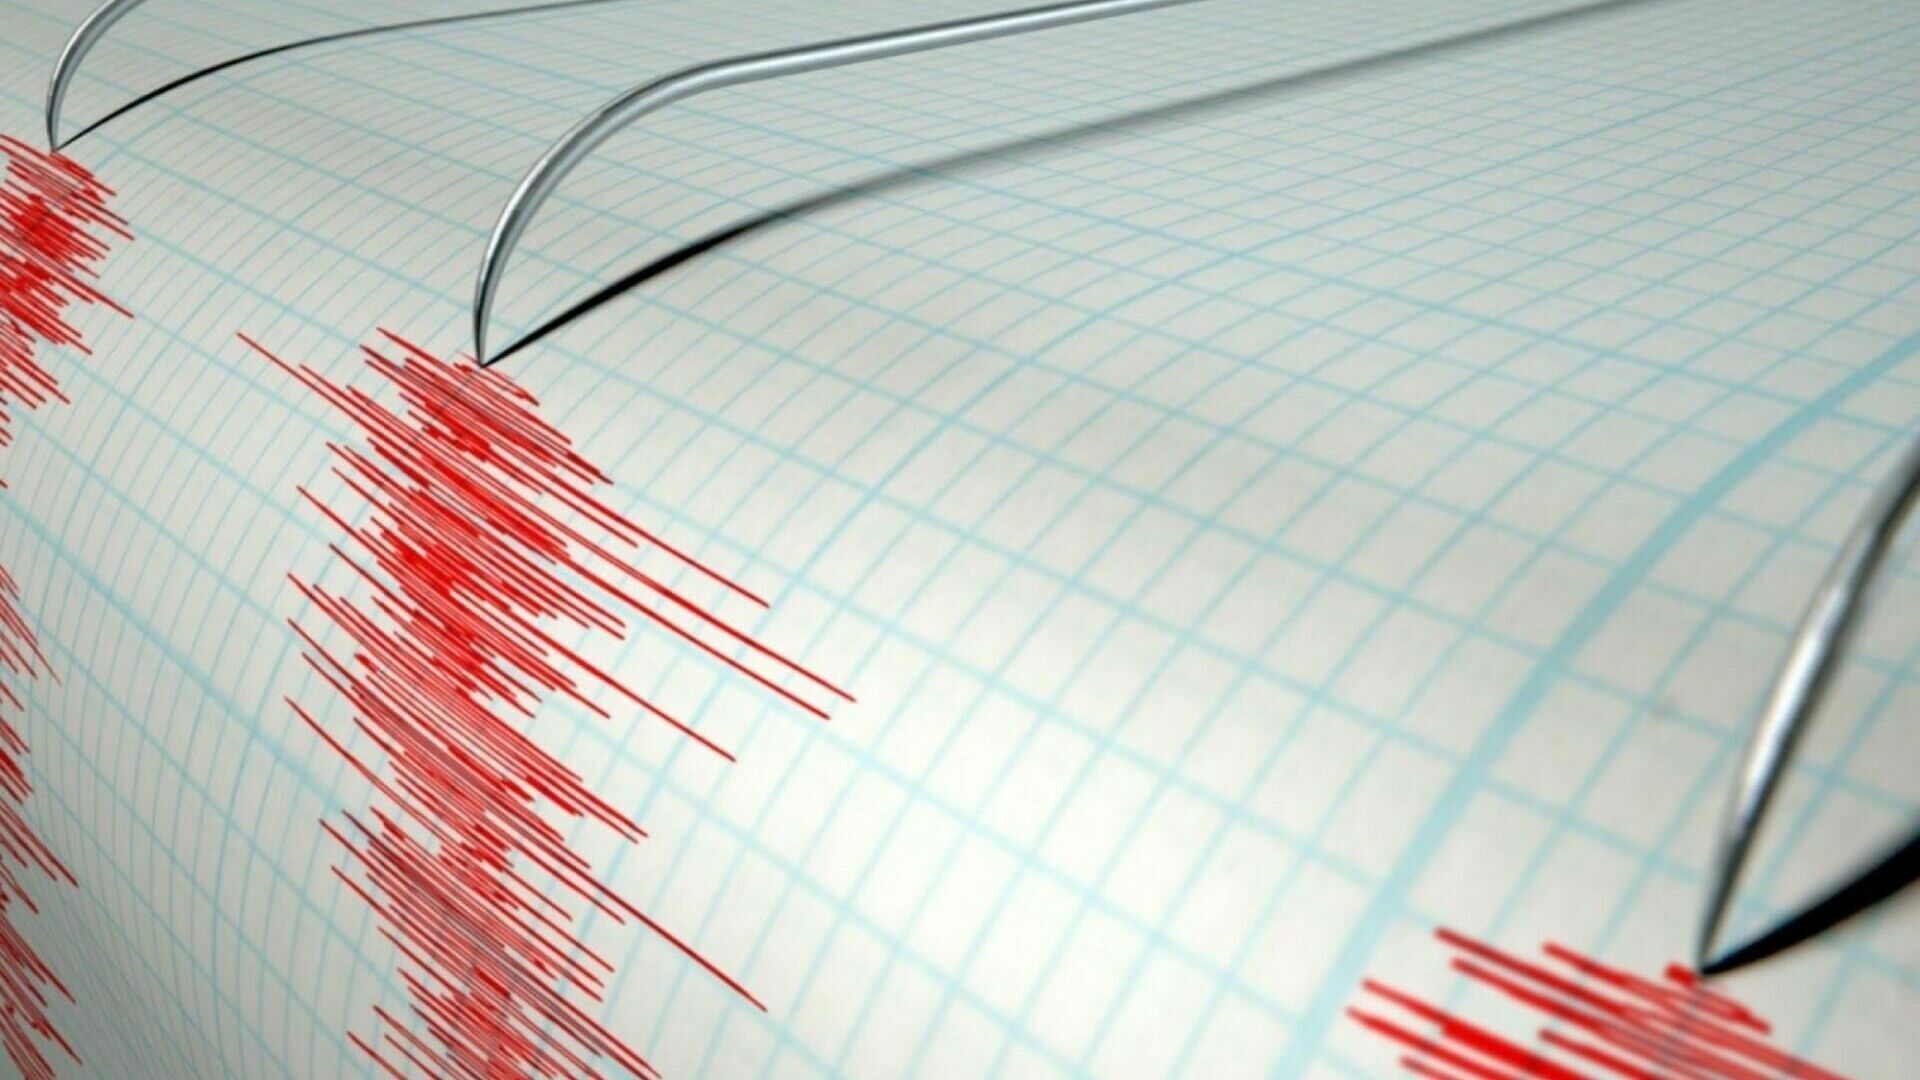 Землетрясение магнитудой 5,8 произошло близ Курильских островов